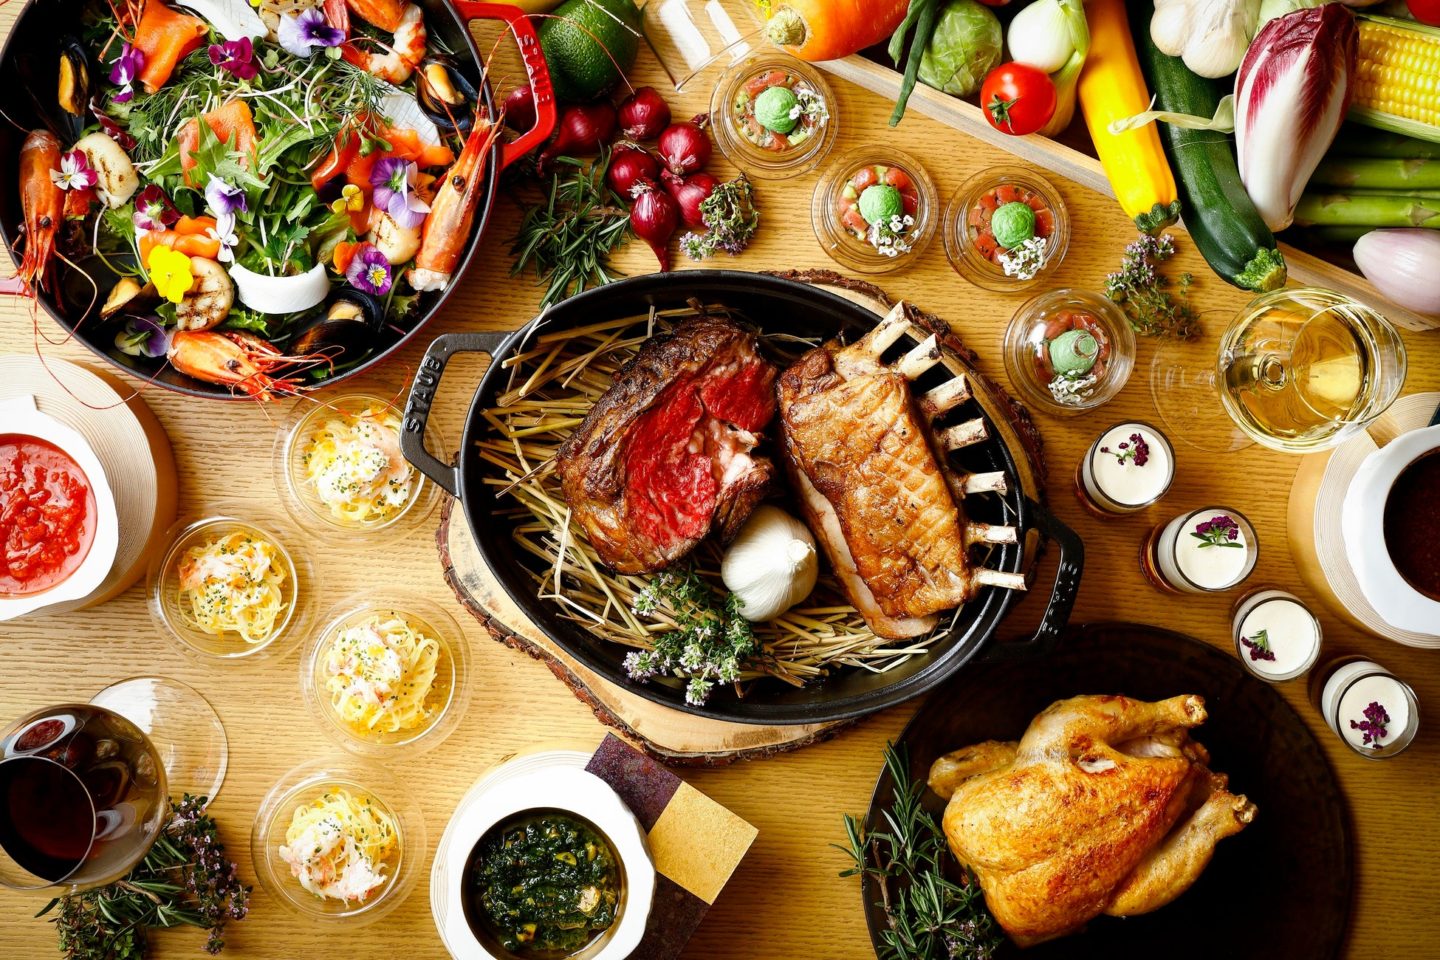 天神川に面したテラス席で優雅なディナータイム　夏季限定「TENJIN テラスプラン」2022年7 月1日(金)より販売開始 夏野菜と3種の肉の旨味を味わうグリル料理をフリーフロードリンクとともに